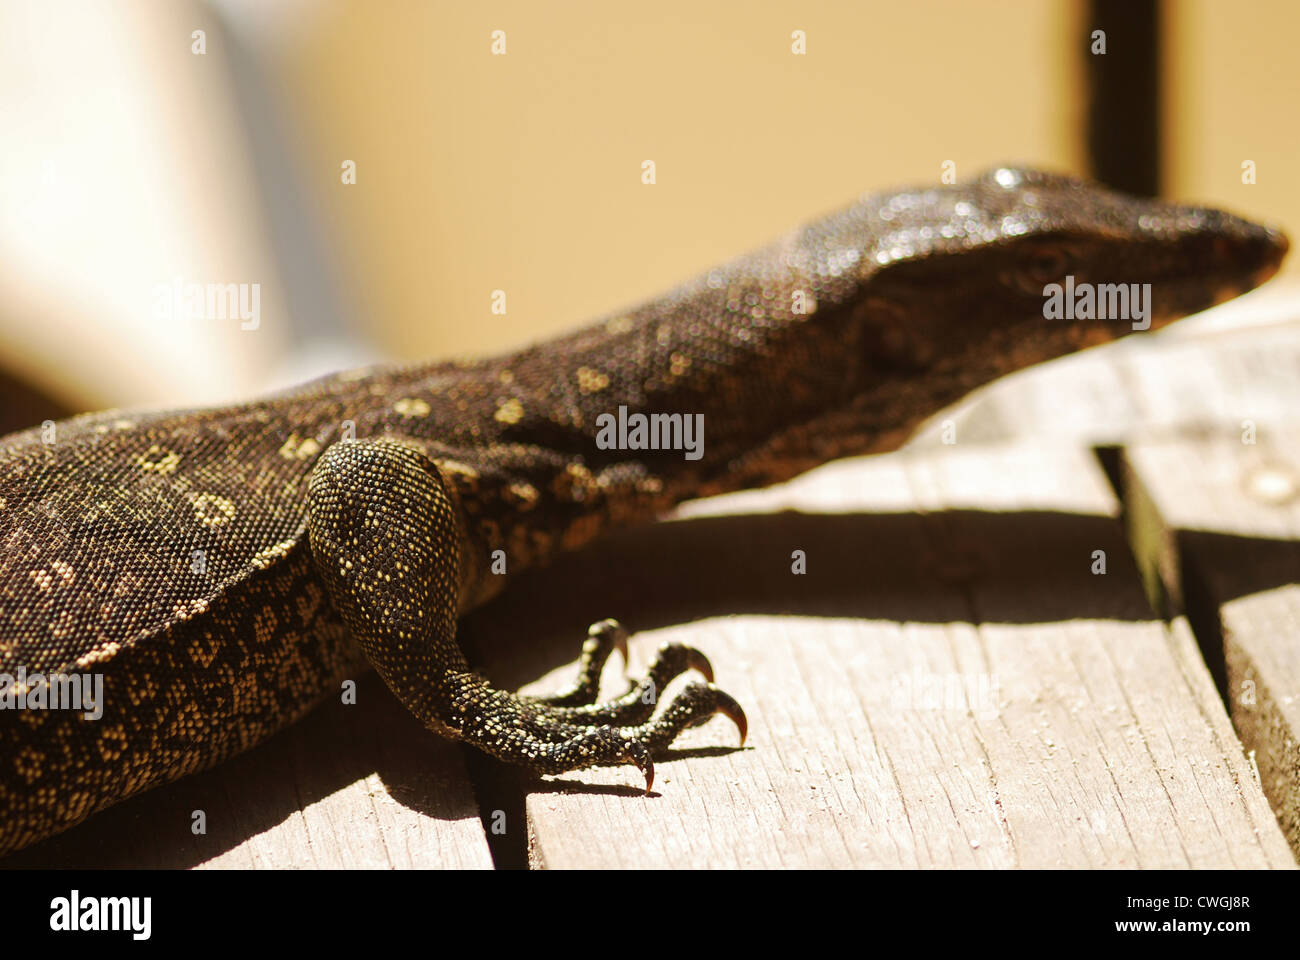 Malaysia, Borneo, Semporna Archipelago, Sipadan, monitor lizard Stock Photo